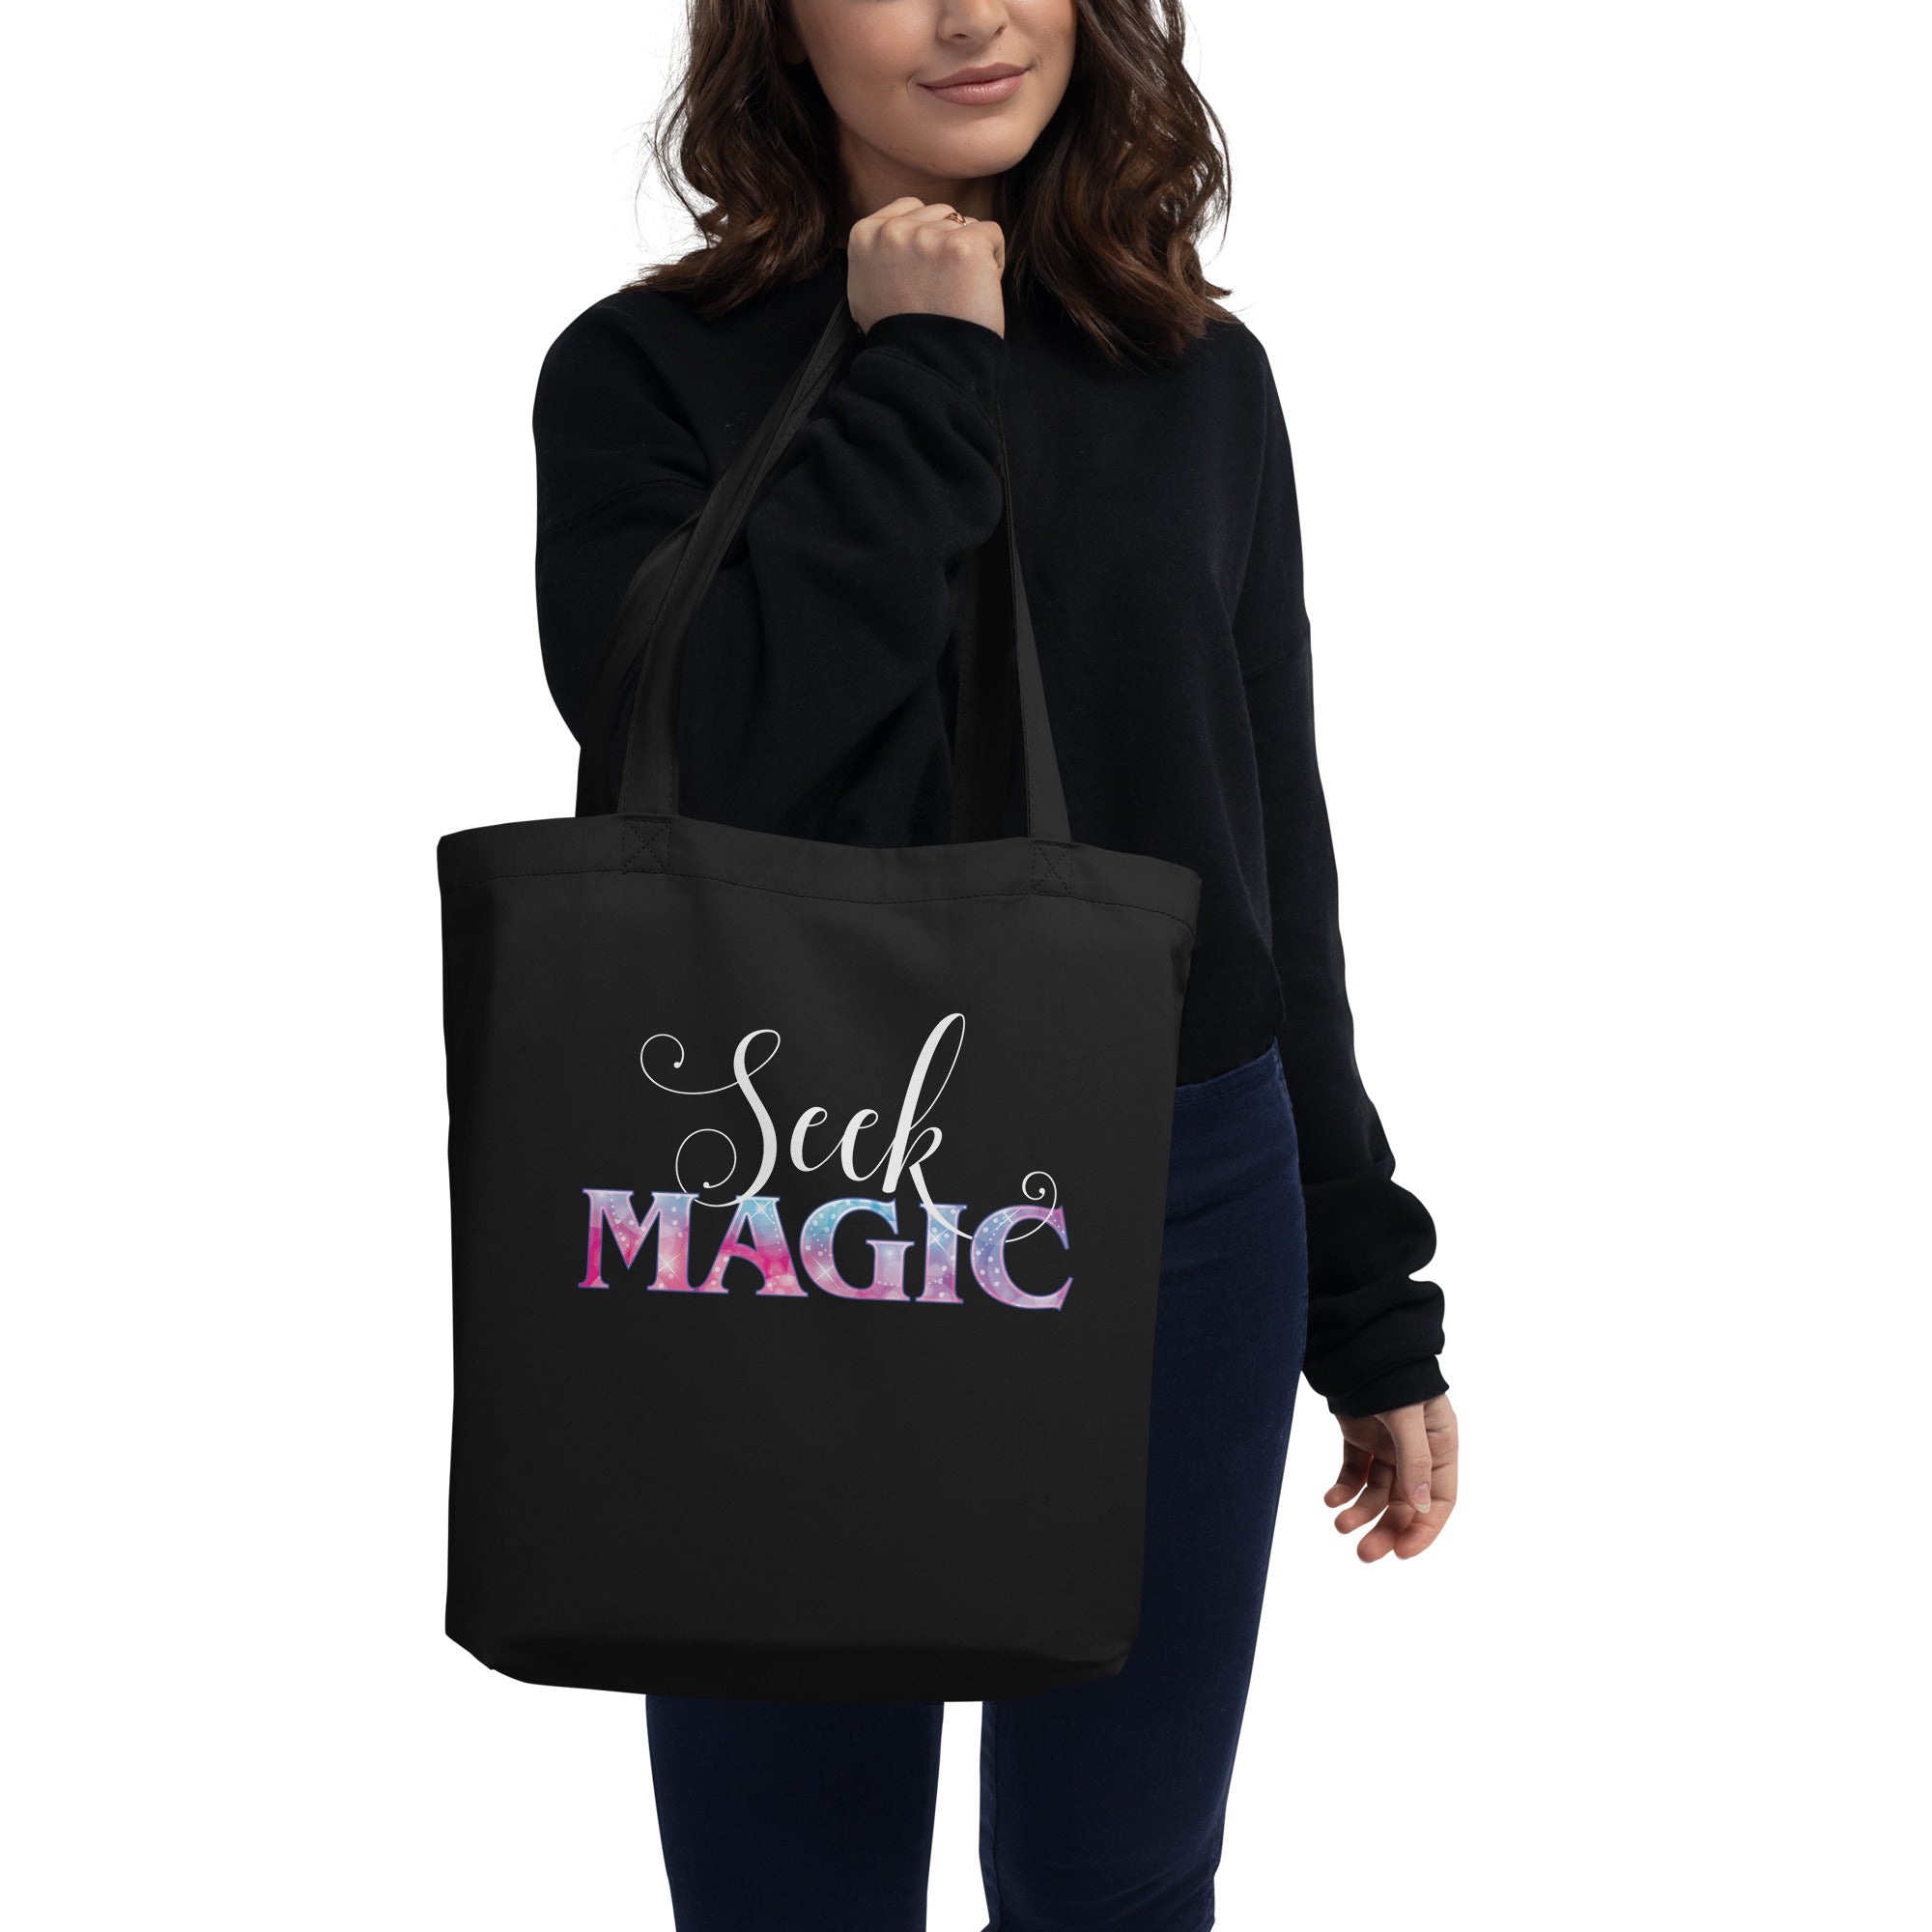 Seek Magic Eco Tote Bag, Large